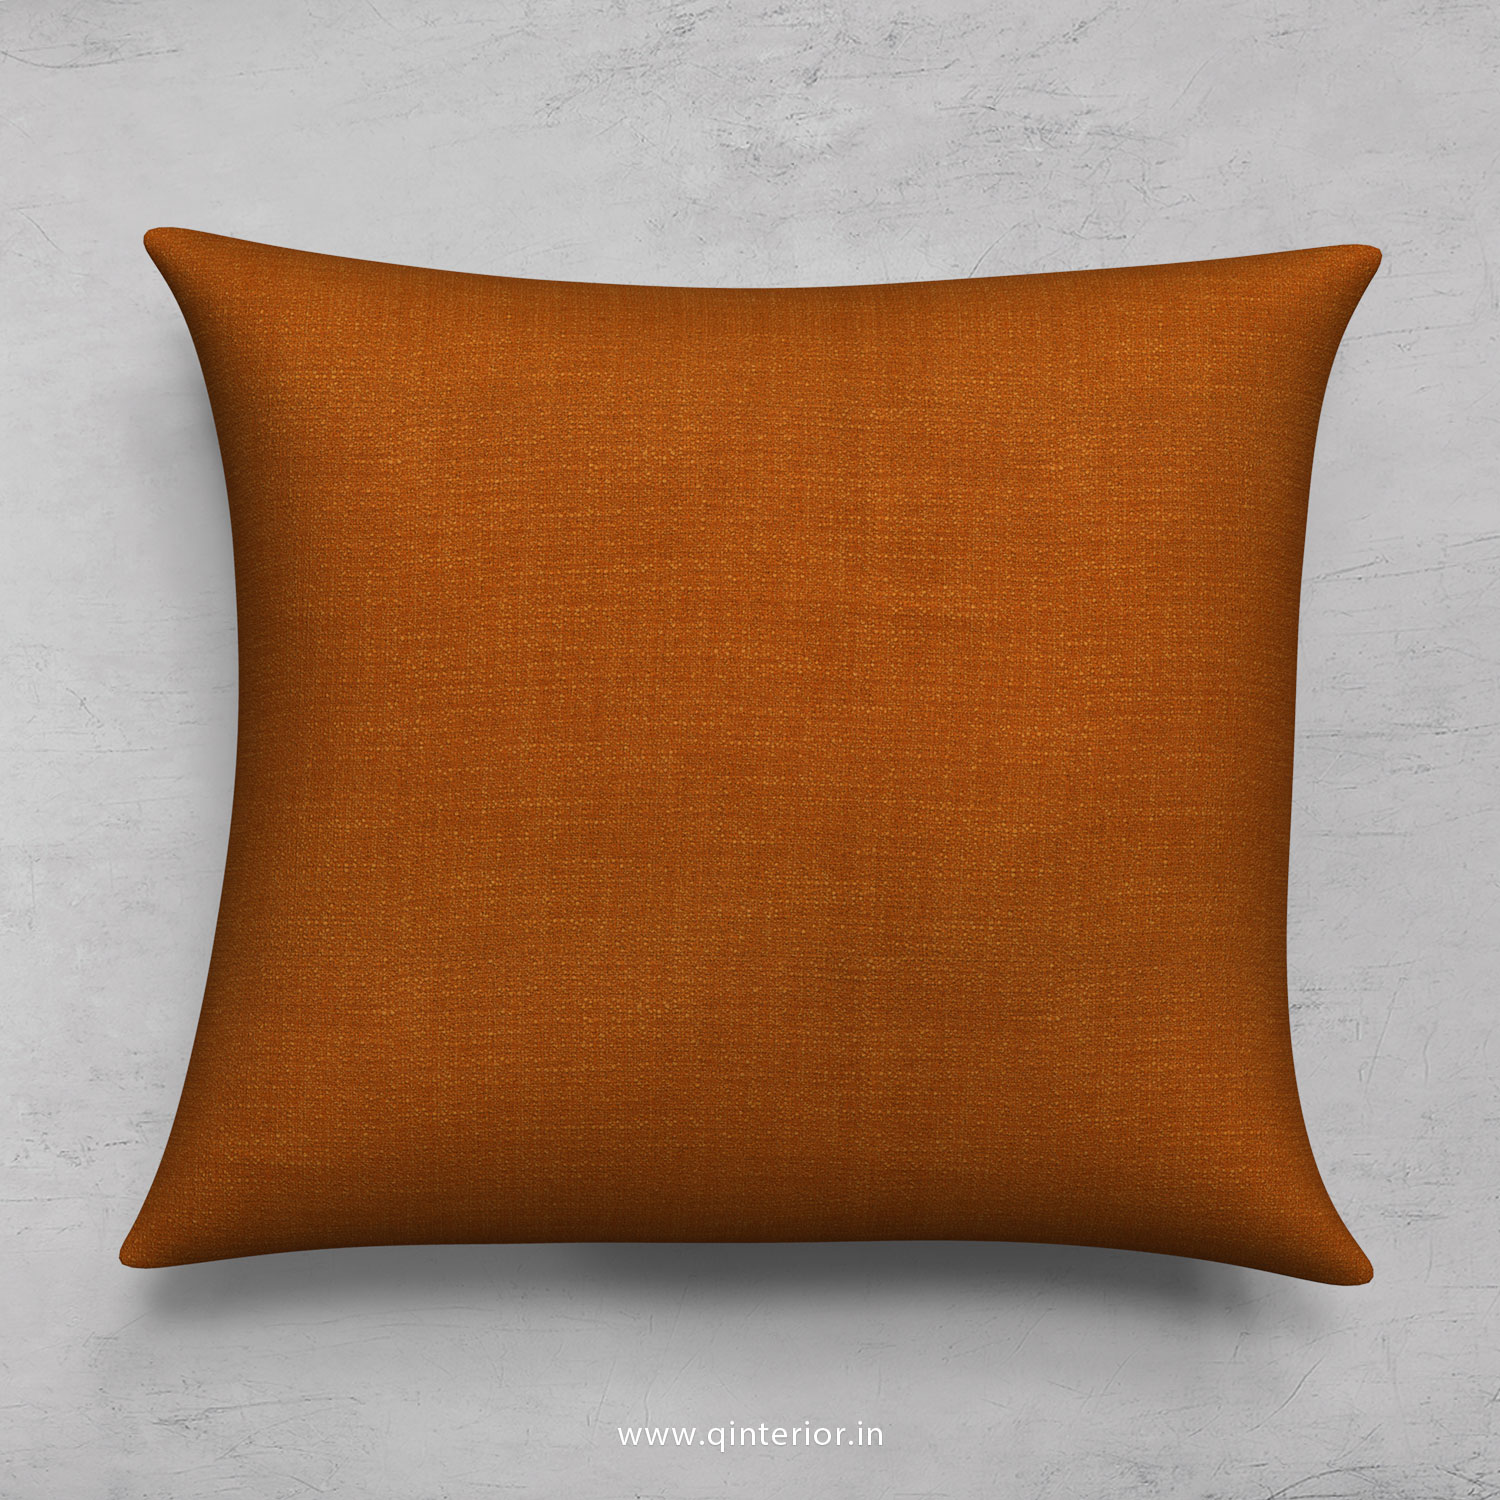 Cushion With Cushion Cover in Bargello- CUS001 BG02